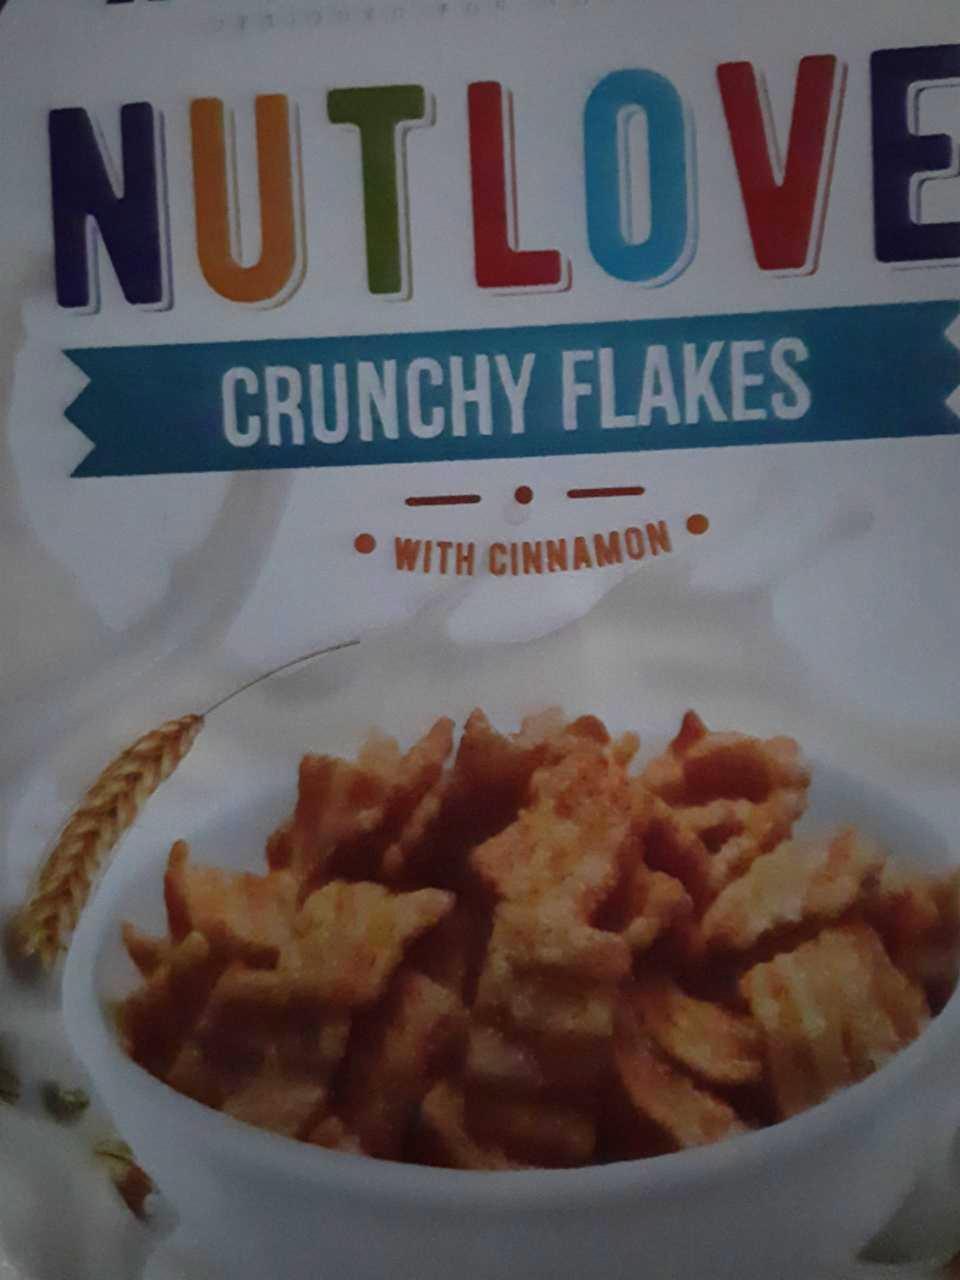 Zdjęcia - Allnutrition Nutlove Crunchy Flakes